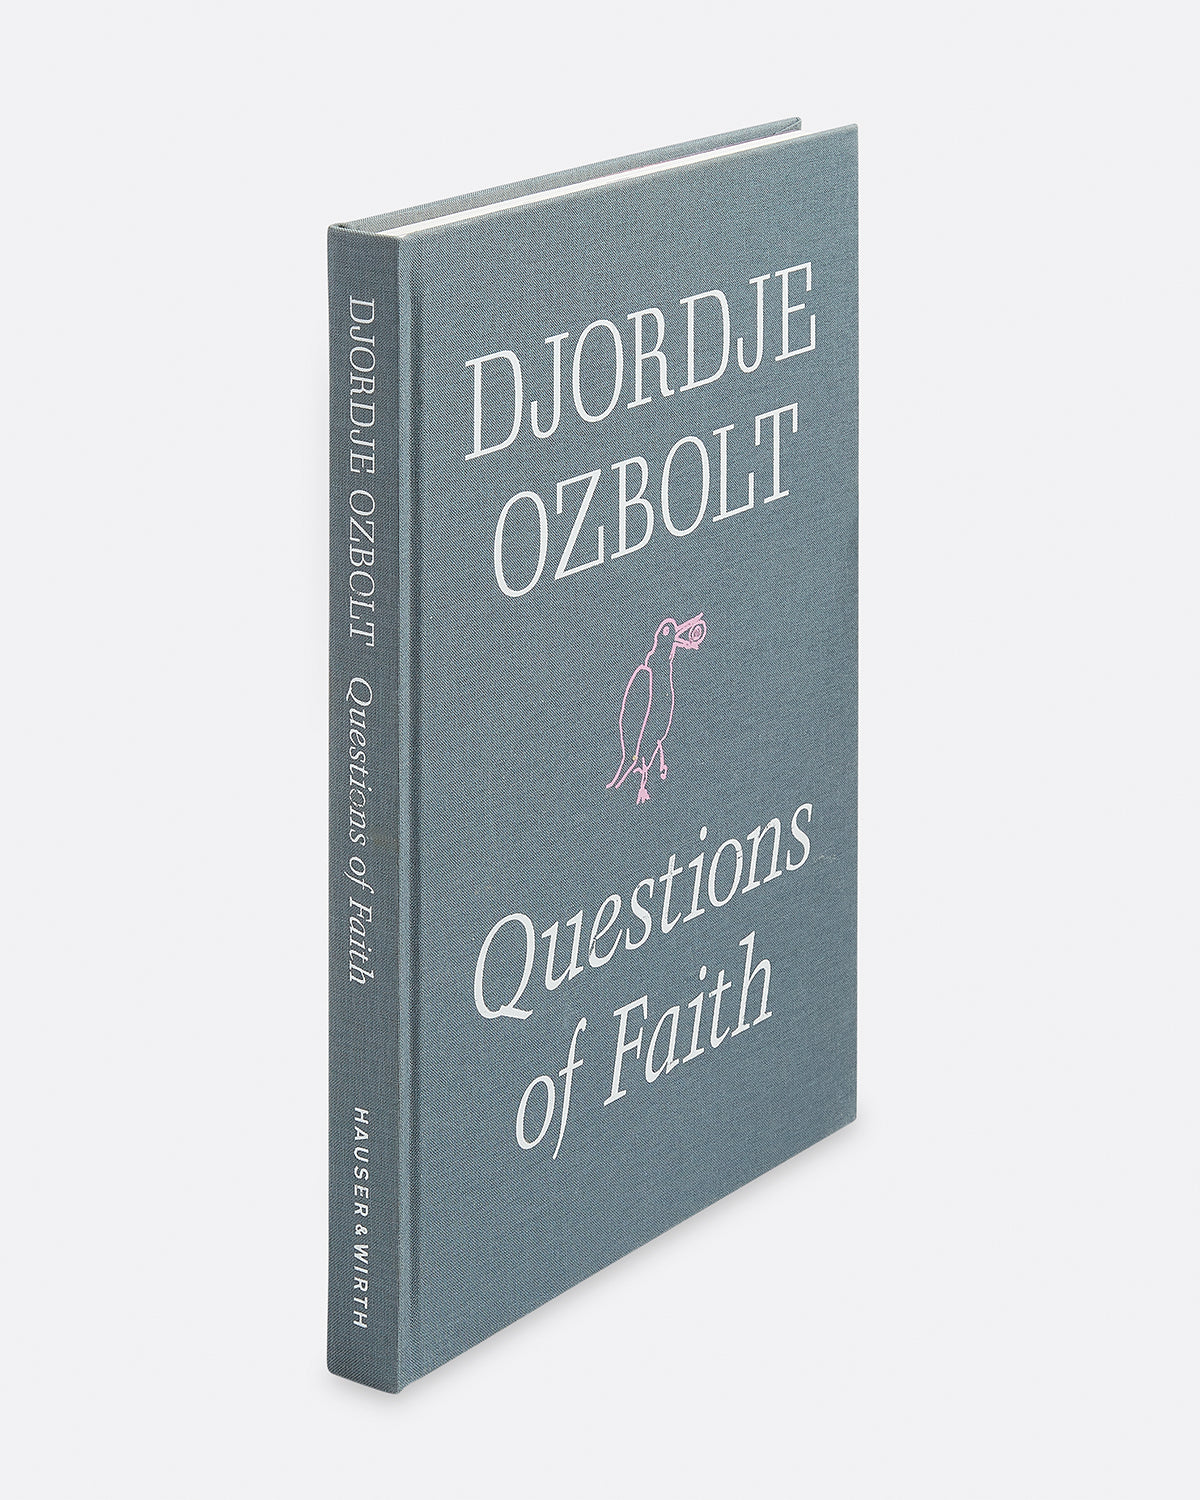 Djordje Ozbolt: Questions of Faith Default Title